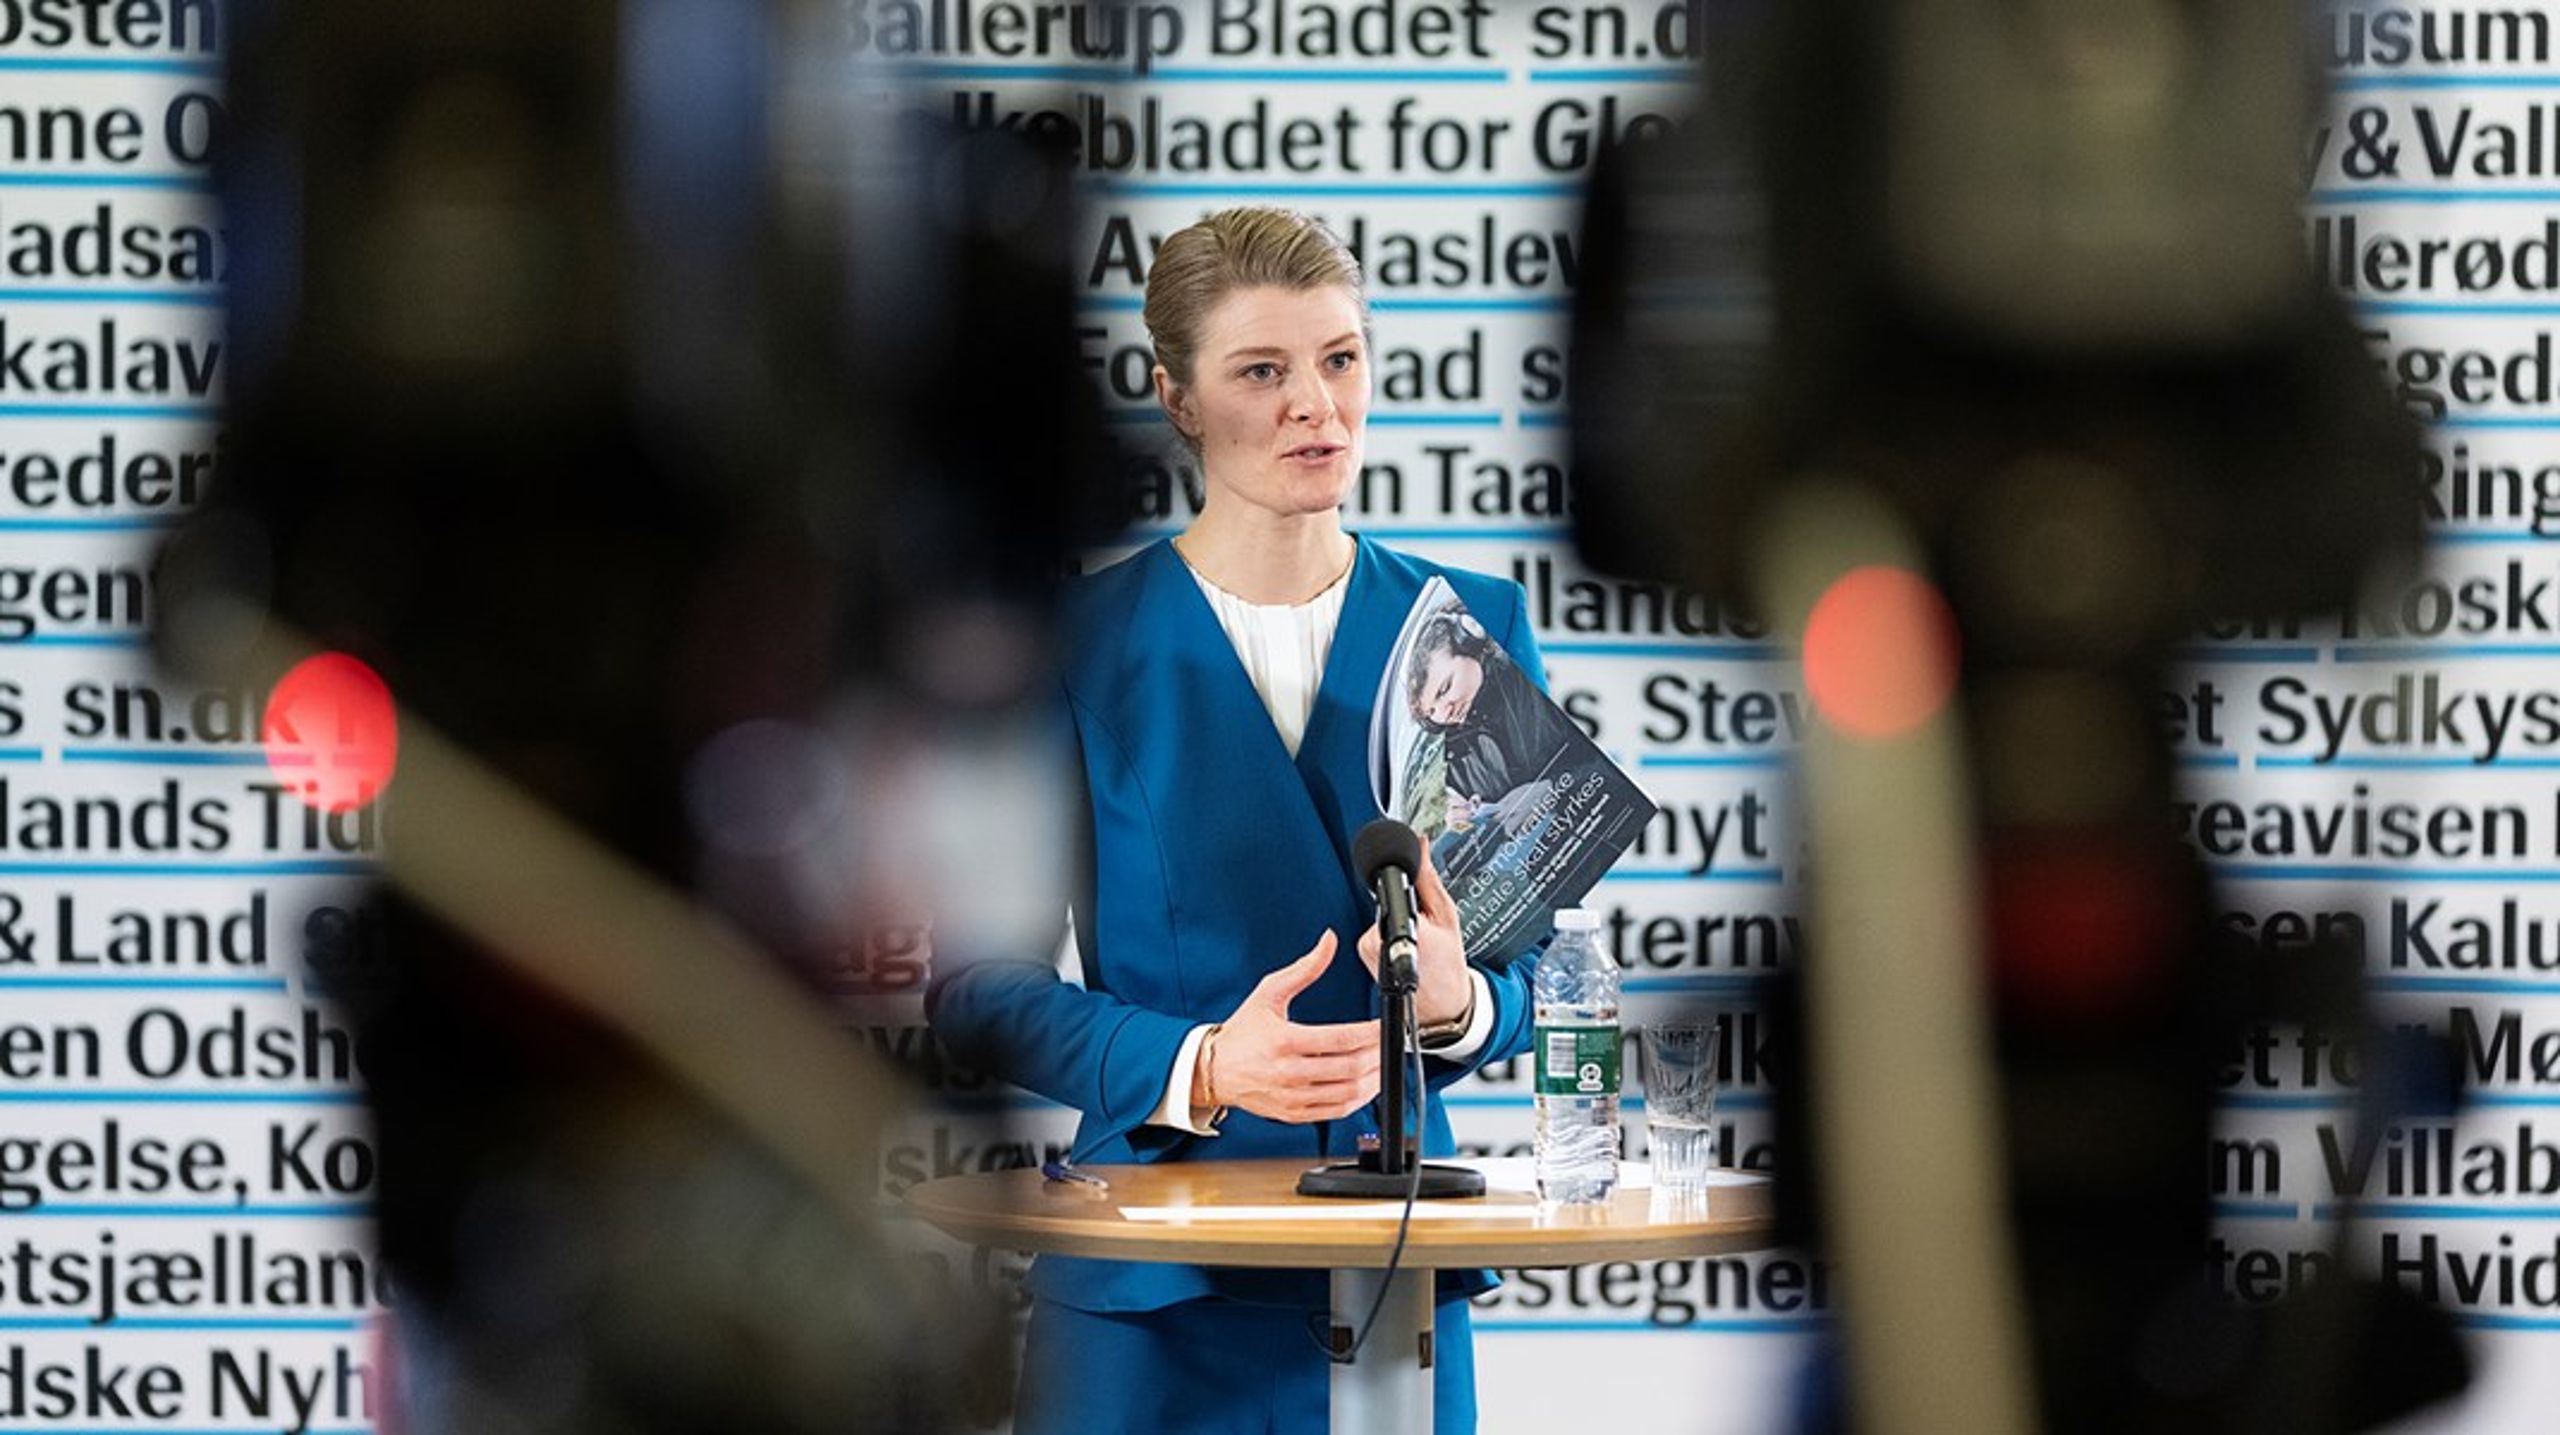 "Det her udspil er anderledes," sagde kulturminister Ane Halsboe-Jørgensen, da hun torsdag præsenterede regeringens medieudspil.